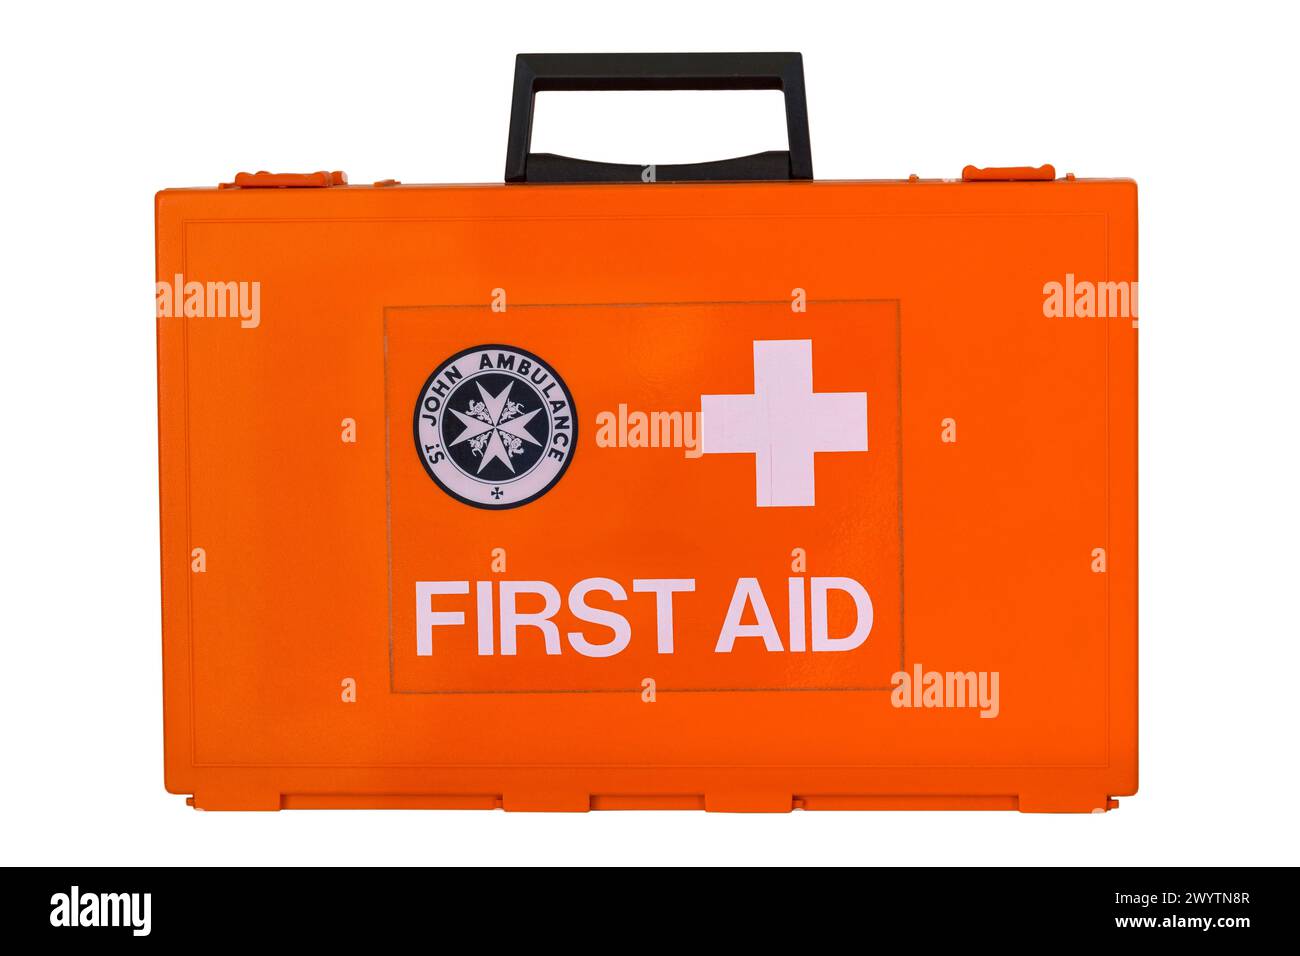 St John Ambulance First Aid Kit box isolated on white background Stock Photo